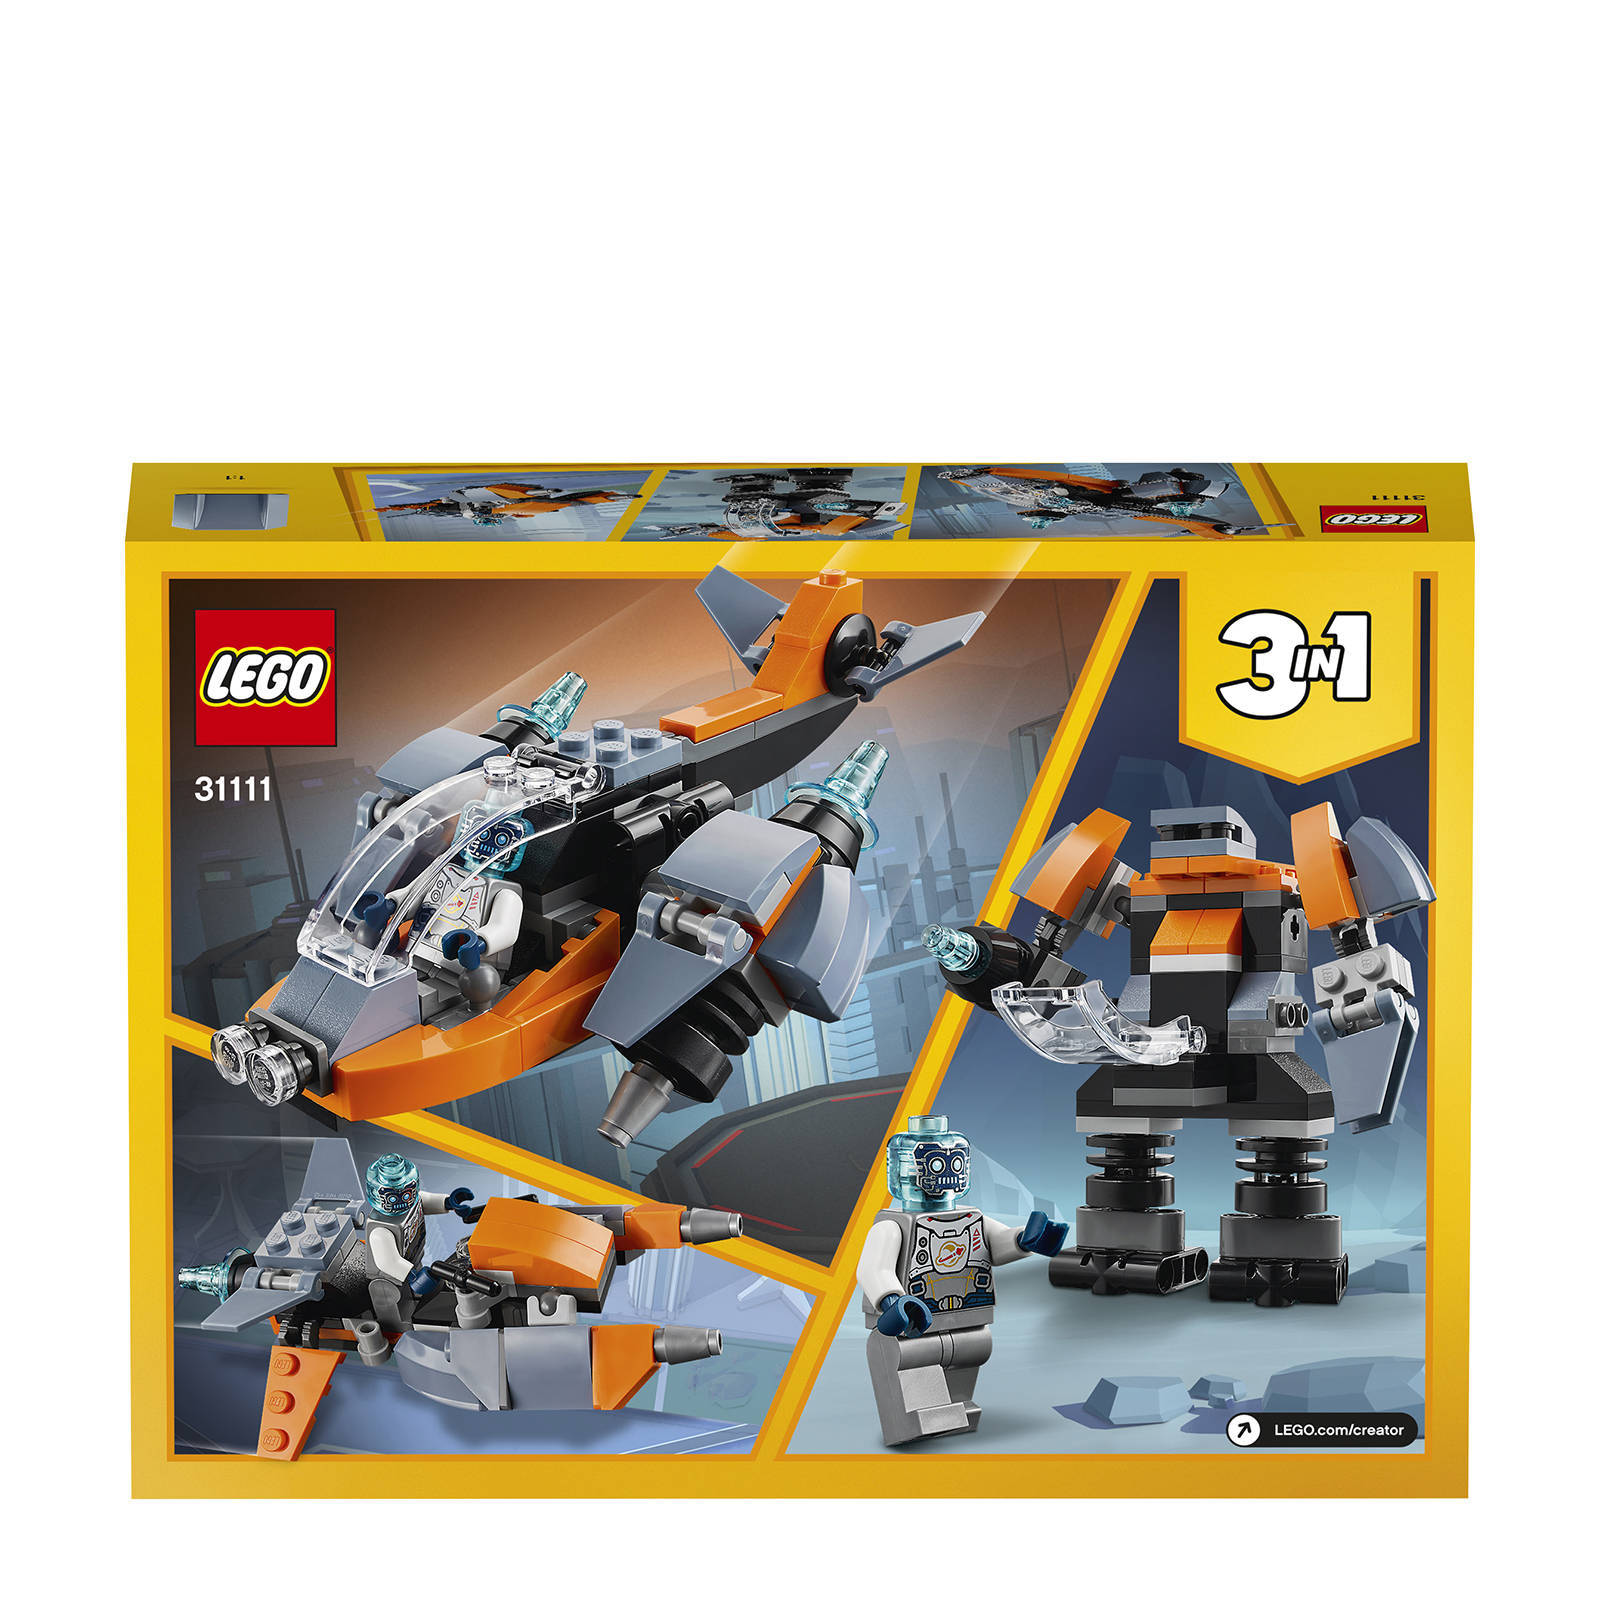 Lego 31111 Creator 3in1 Cyberdrone Bouwset met Cybermecha en Scooter met Robot Minifiguur, Ruimtespeelgoed vanaf 6 Jaar online kopen